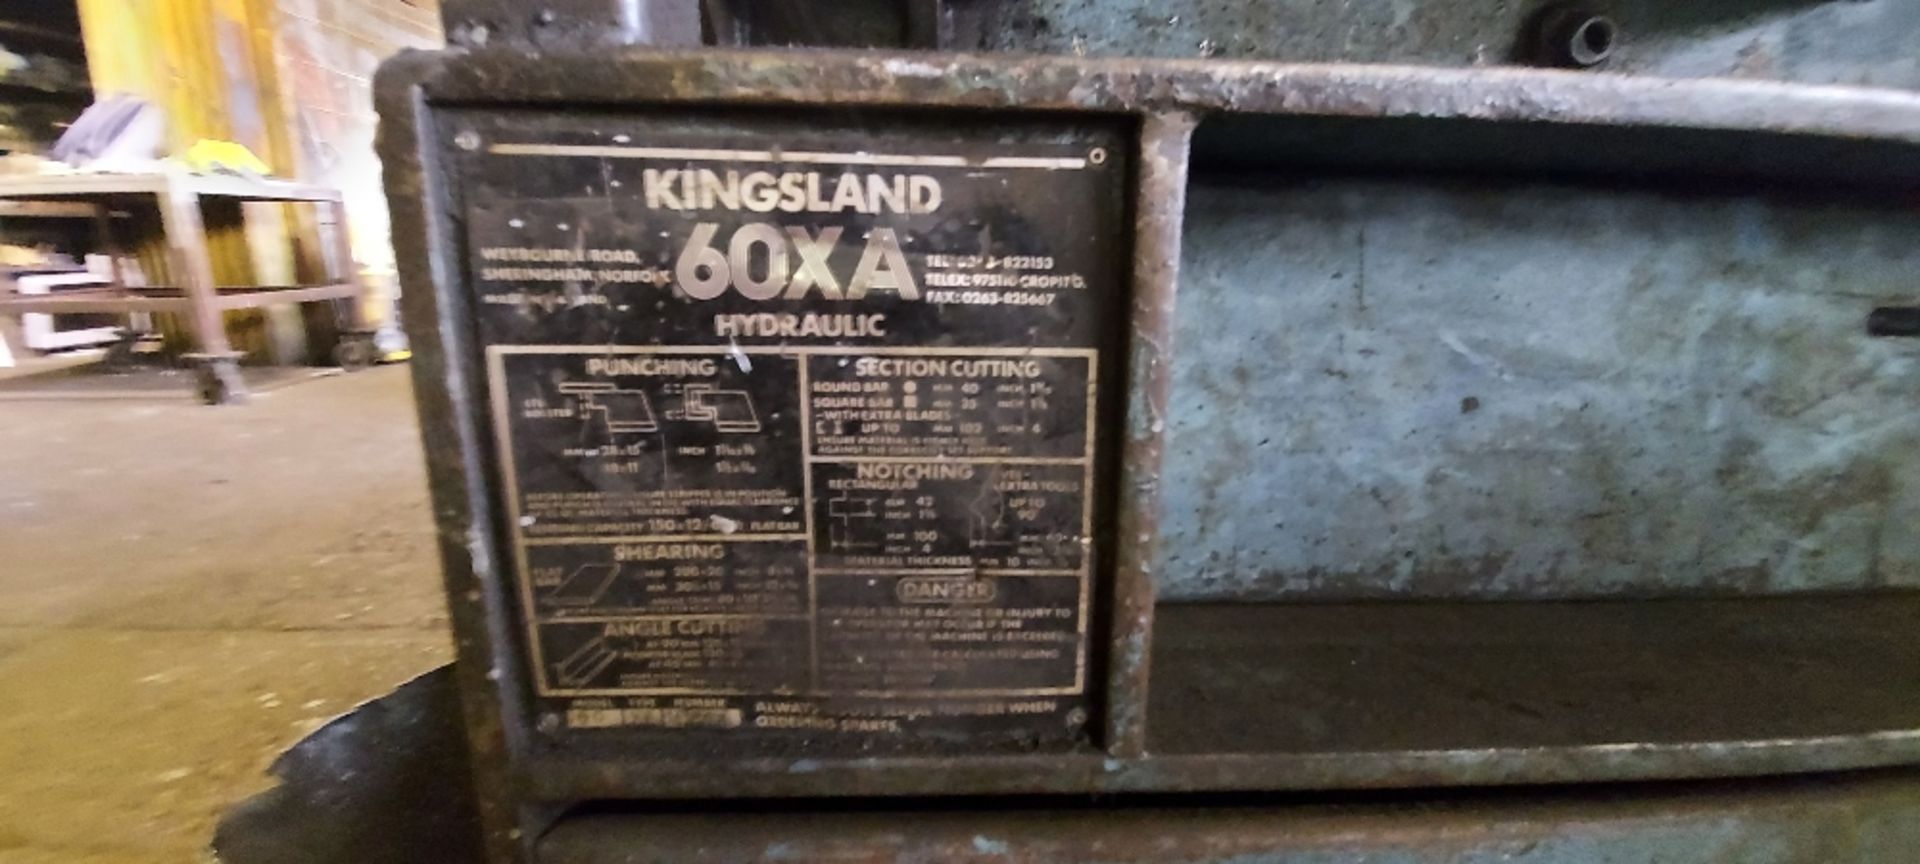 Kingsland 60XA Hydraulic Metal Working Machine - Image 5 of 5